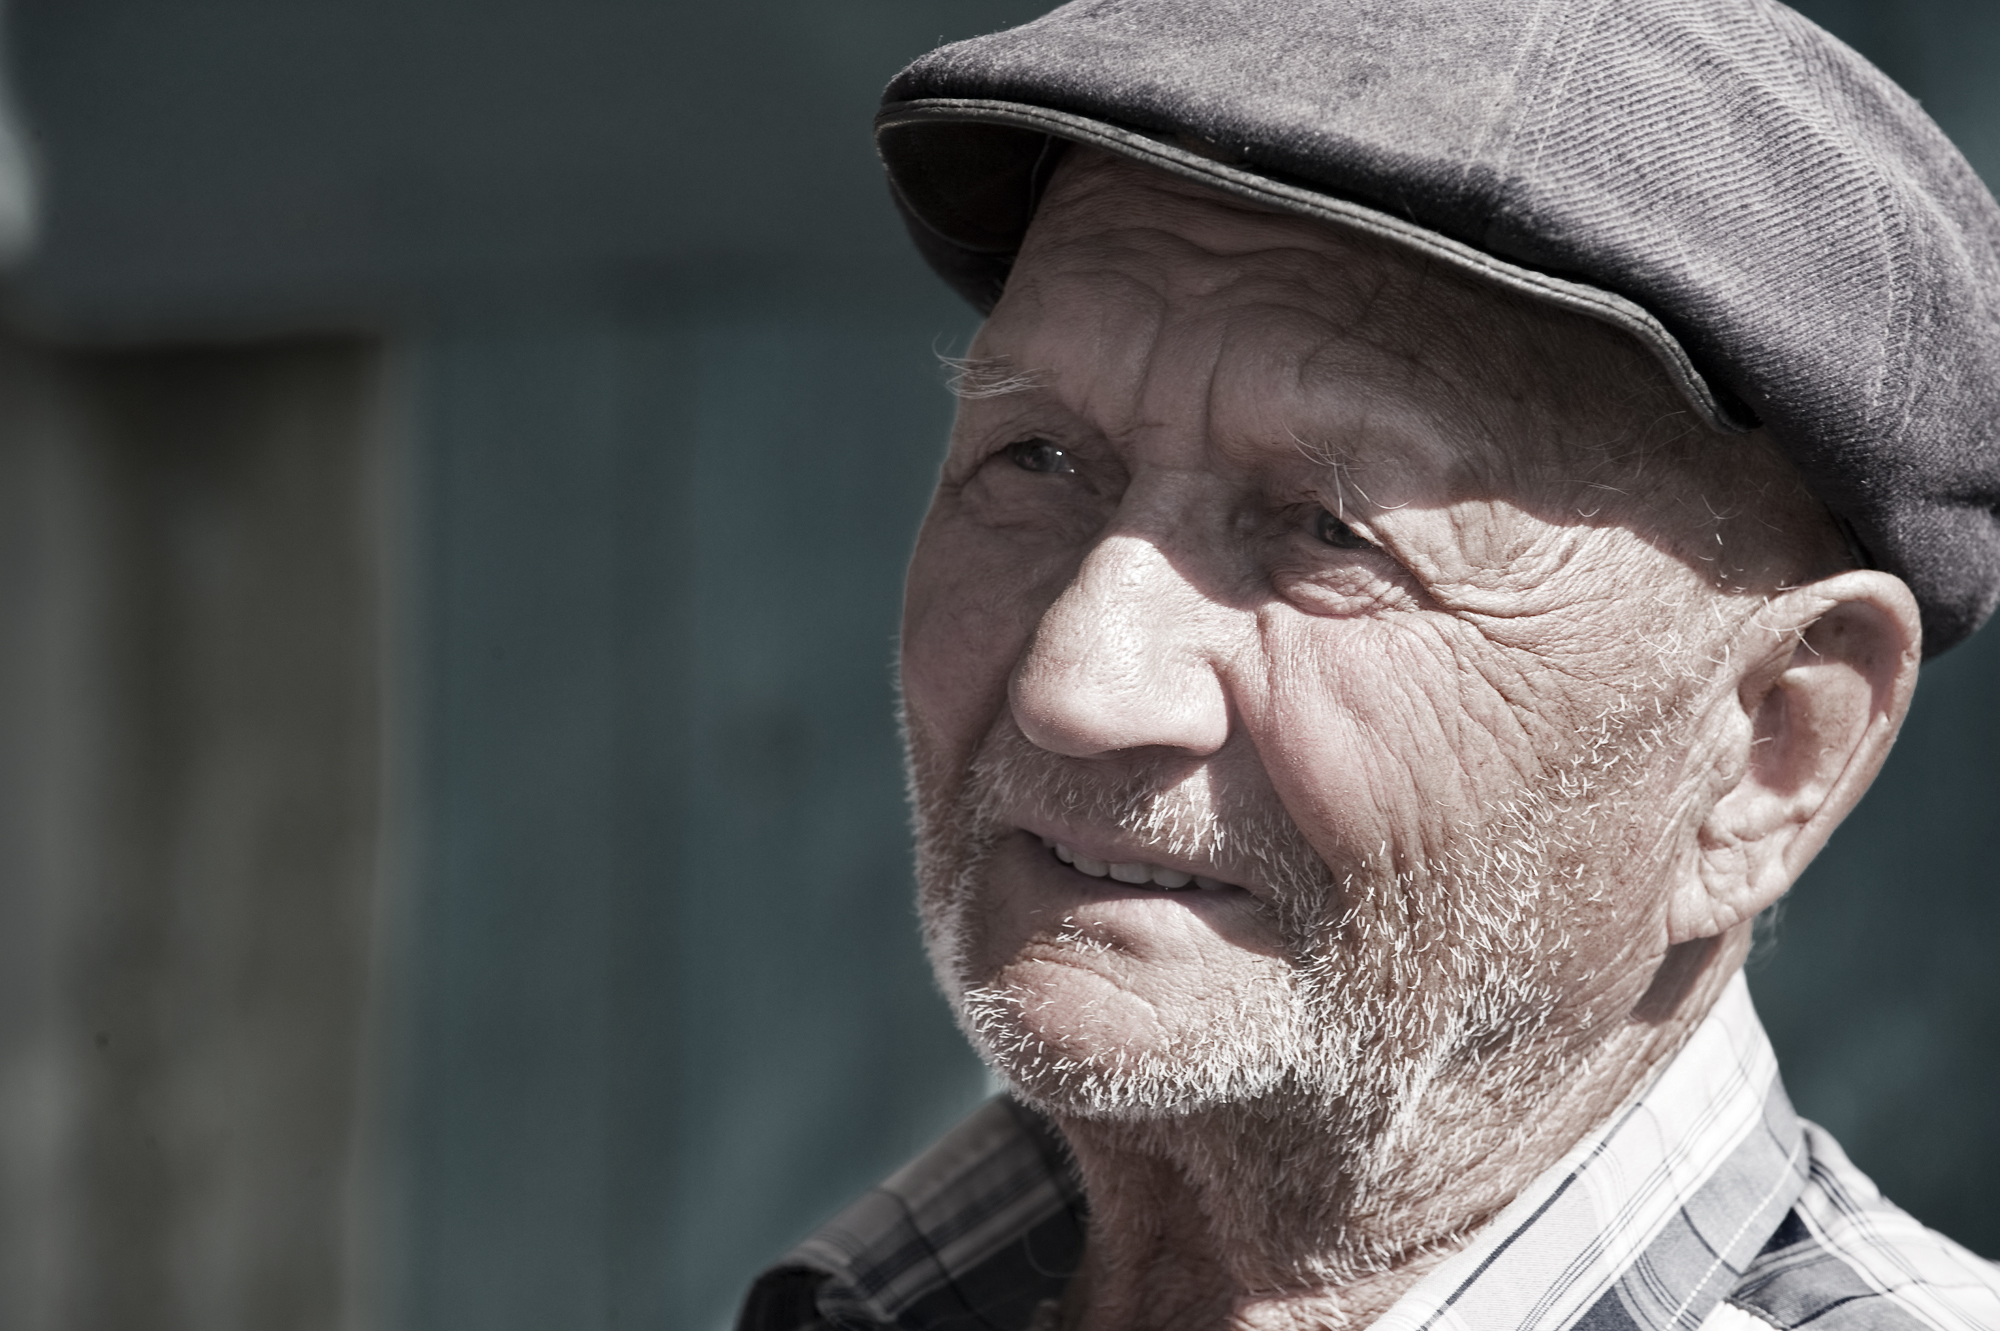 Old man in Kyrgyzstan, 2010